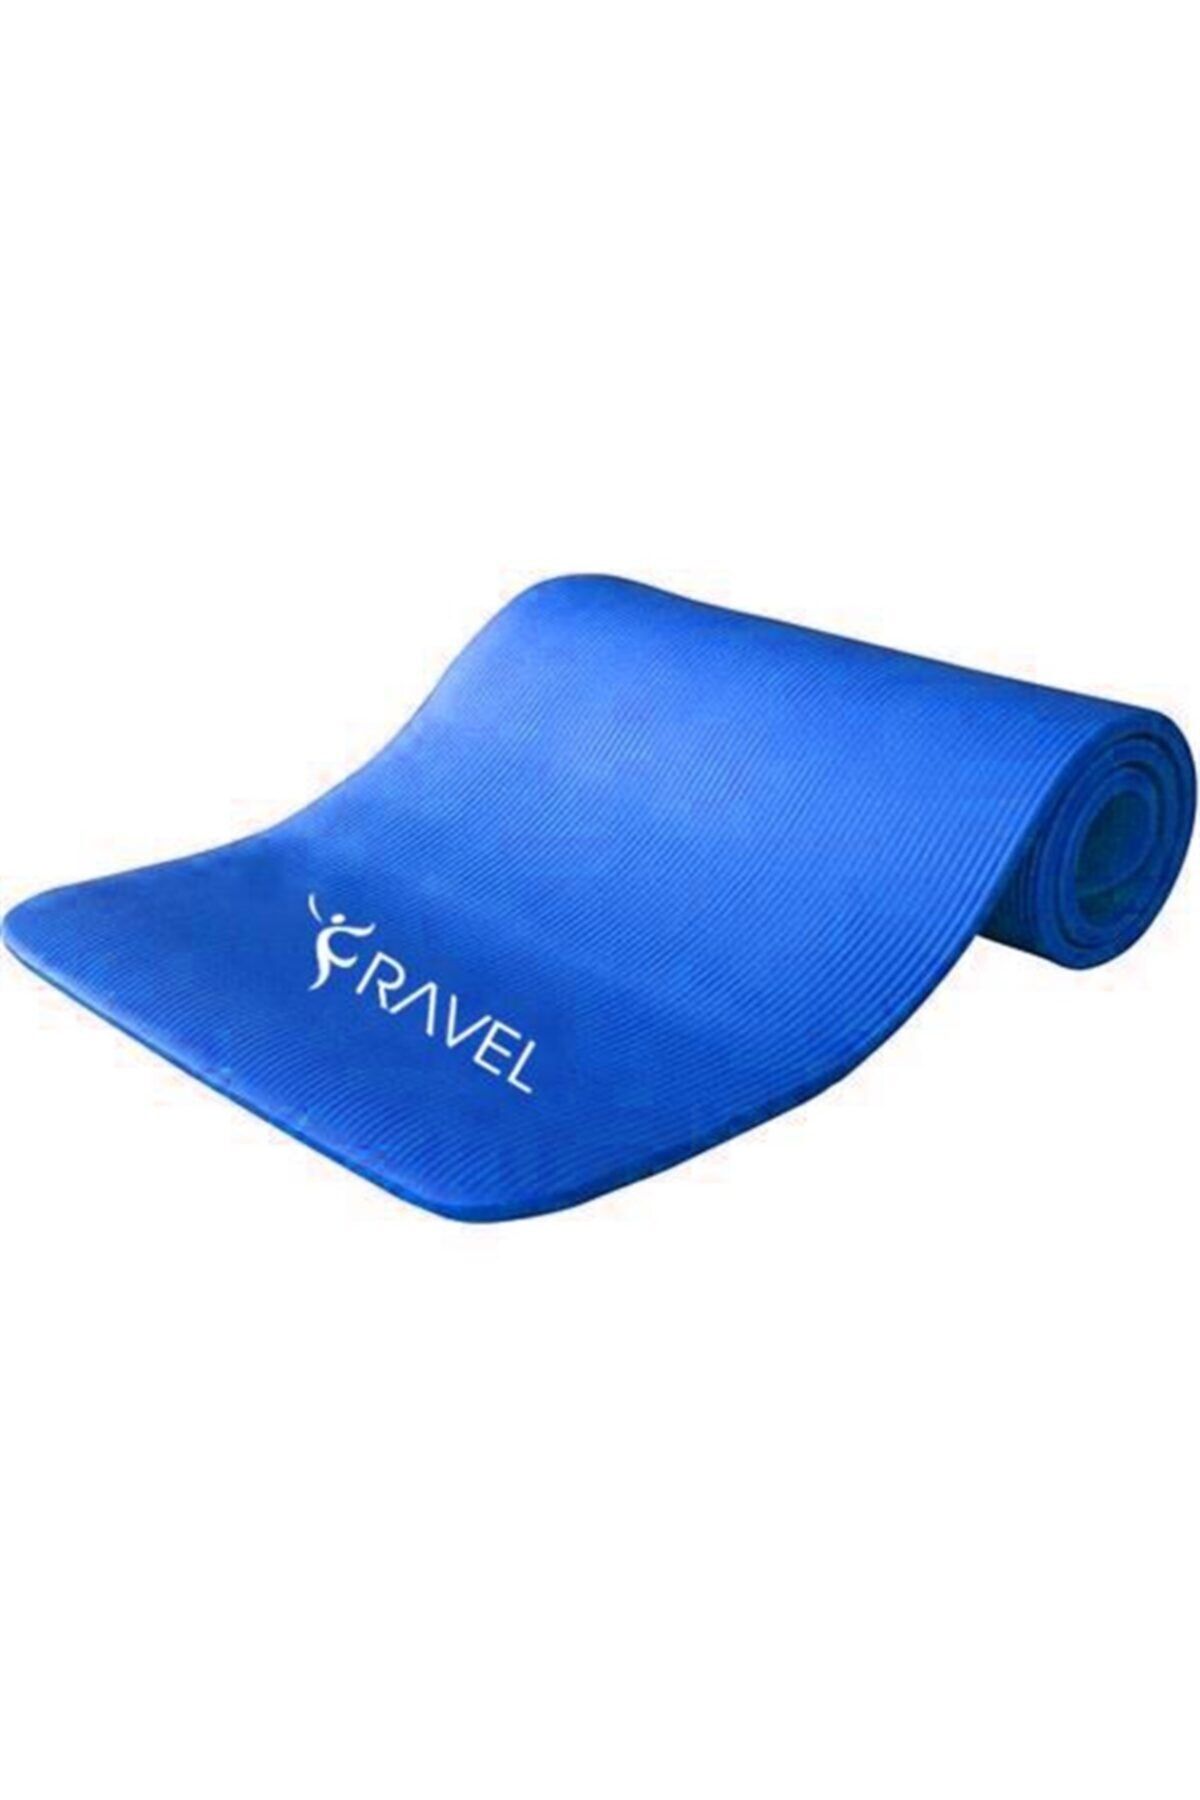 Ravel 10 mm Kalınlık Mavi Deluxe Pilates Egzersiz Minderi & Yoga Mat